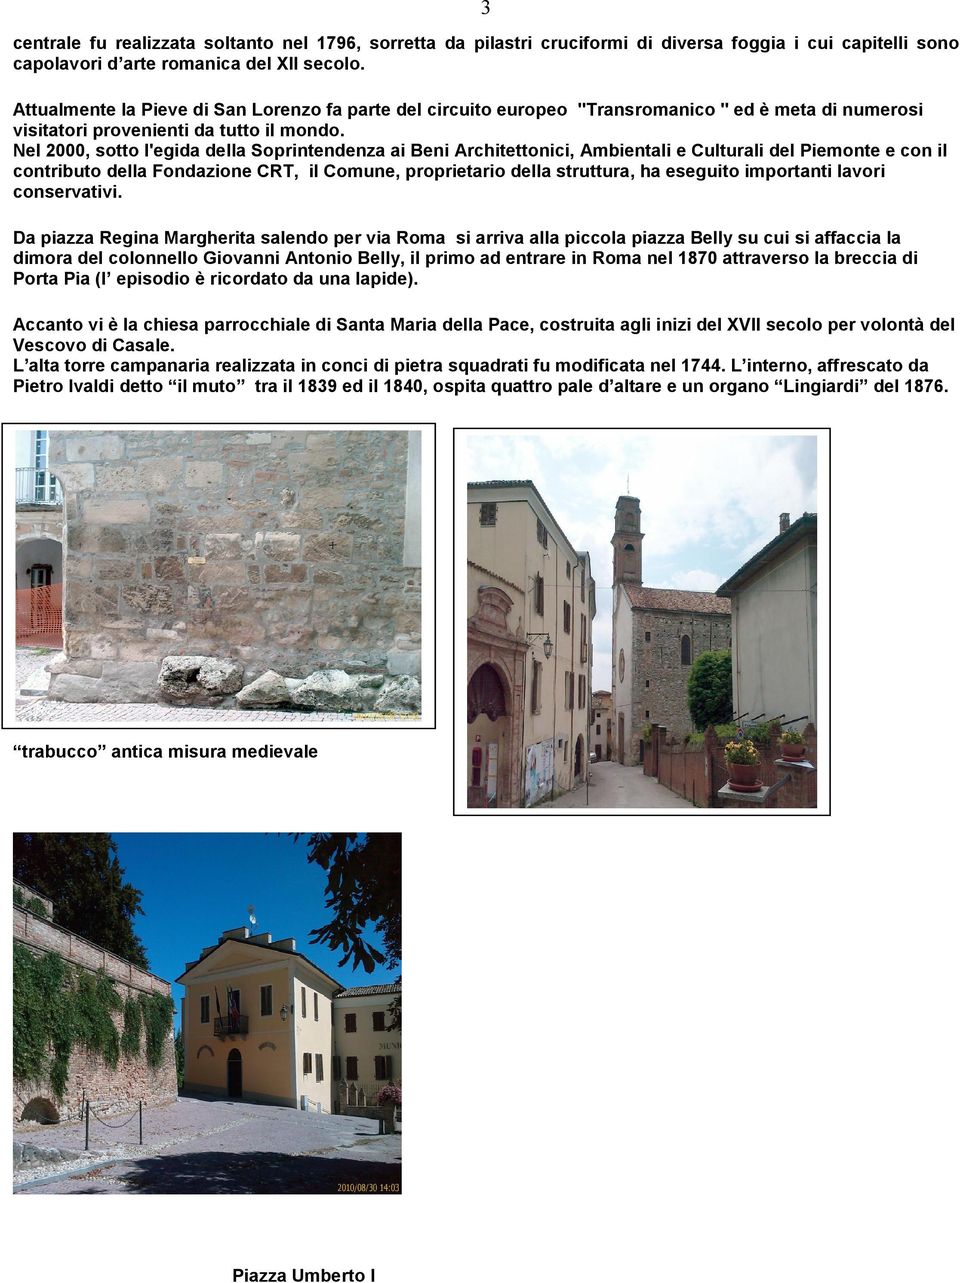 Nel 2000, sotto l'egida della Soprintendenza ai Beni Architettonici, Ambientali e Culturali del Piemonte e con il contributo della Fondazione CRT, il Comune, proprietario della struttura, ha eseguito